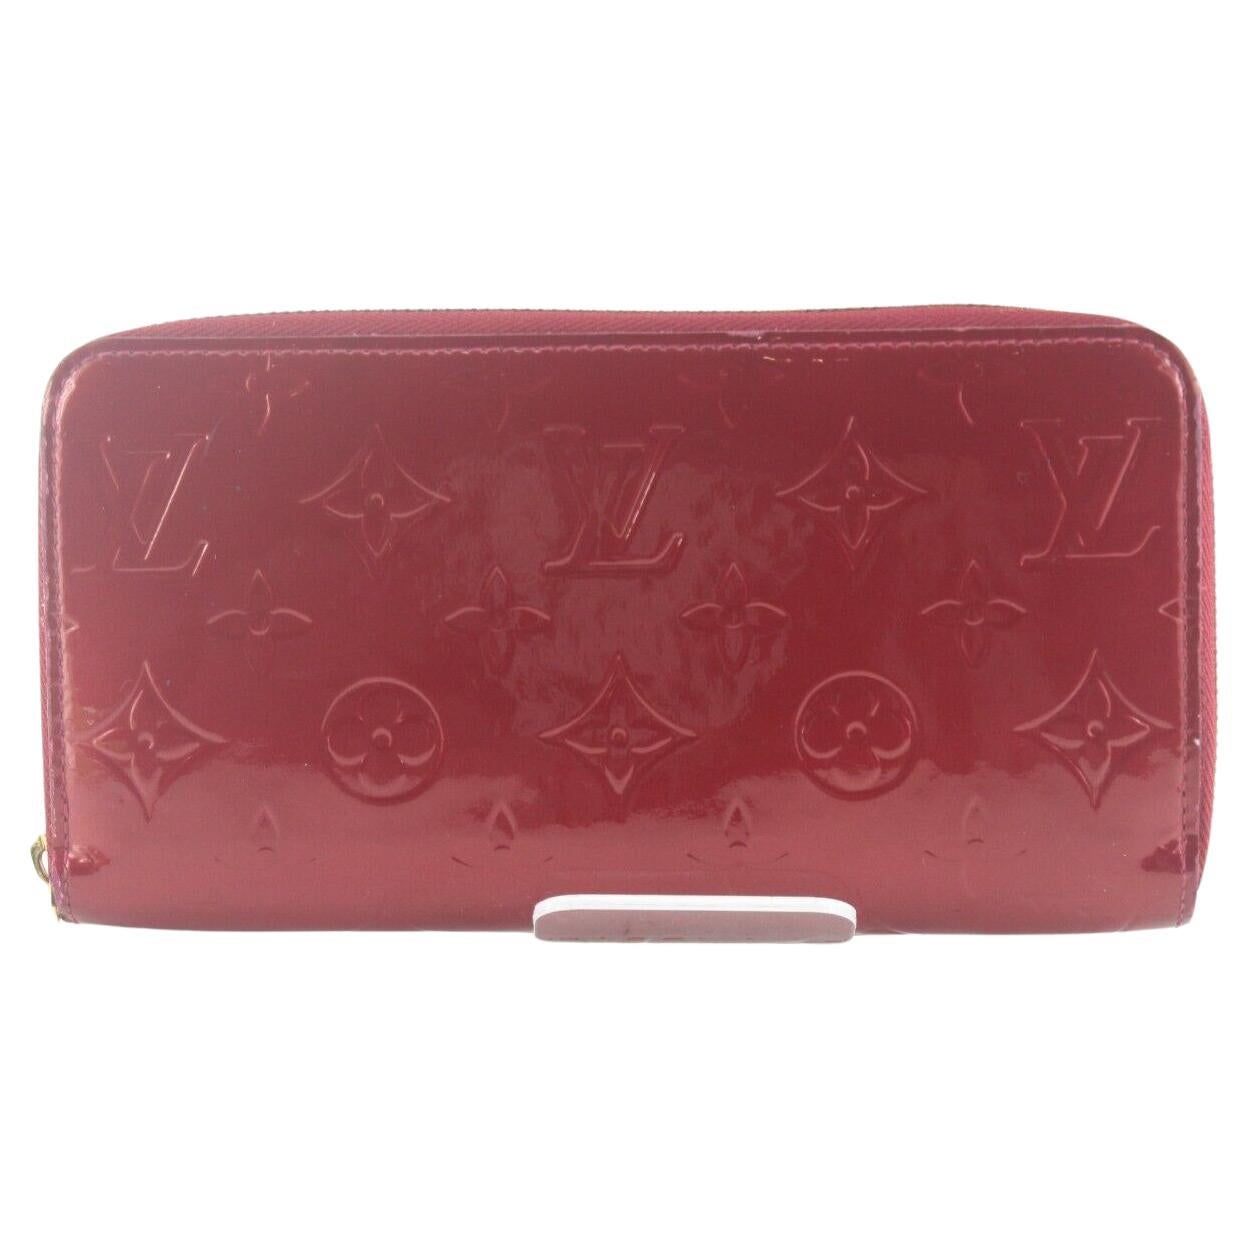 Louis Vuitton Monogram Koala Compact Trifold Wallet 4LZ1026